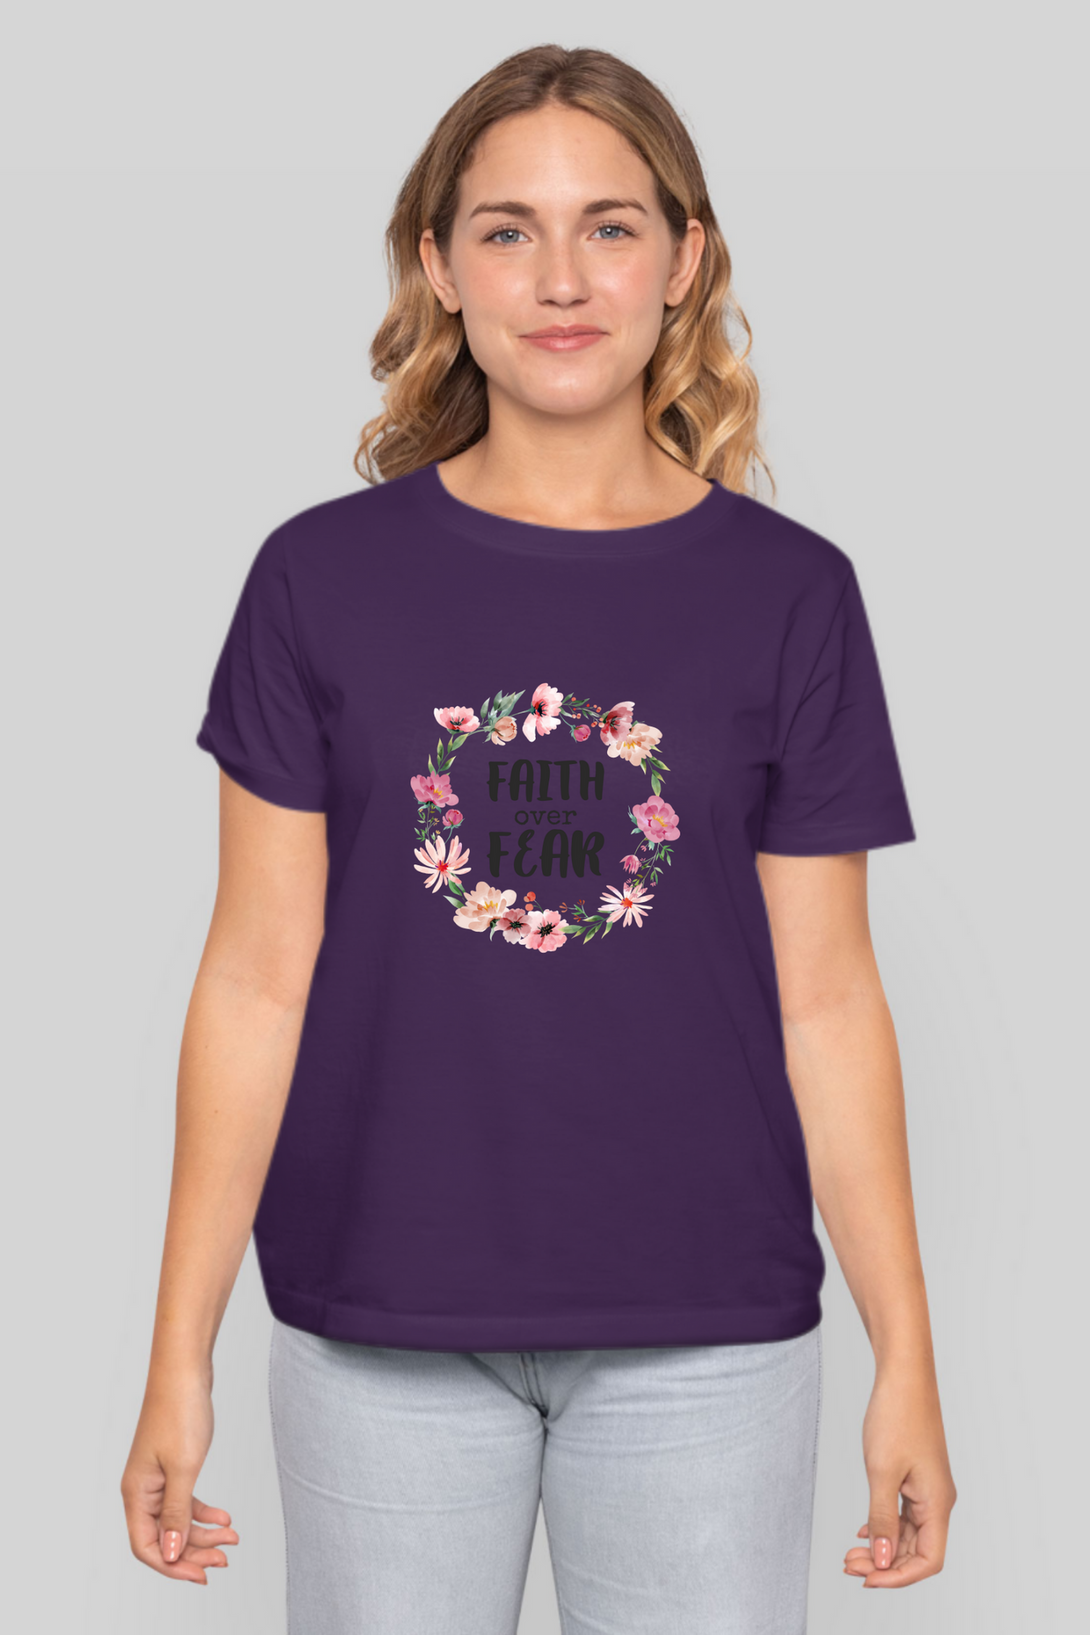 Faith Over Fear Printed T-Shirt For Women - WowWaves - 12